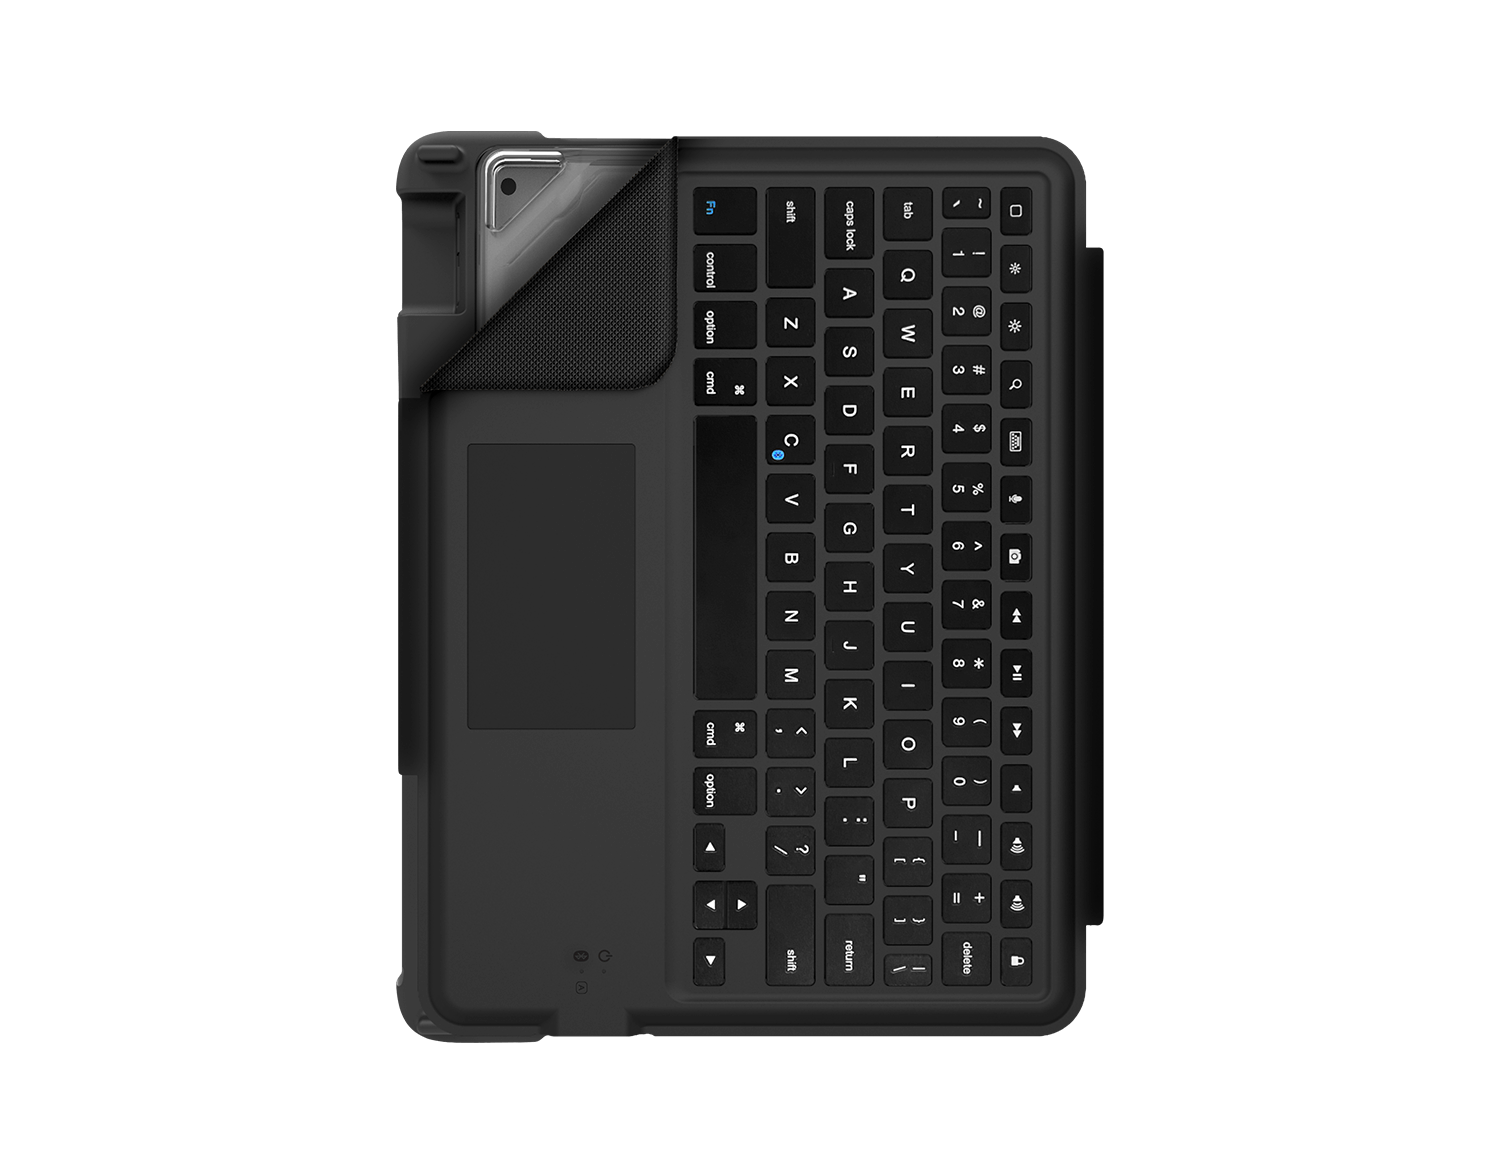 Dux Bluetooth Keyboard Case 9th, 8th and 7th gen - Keyboard